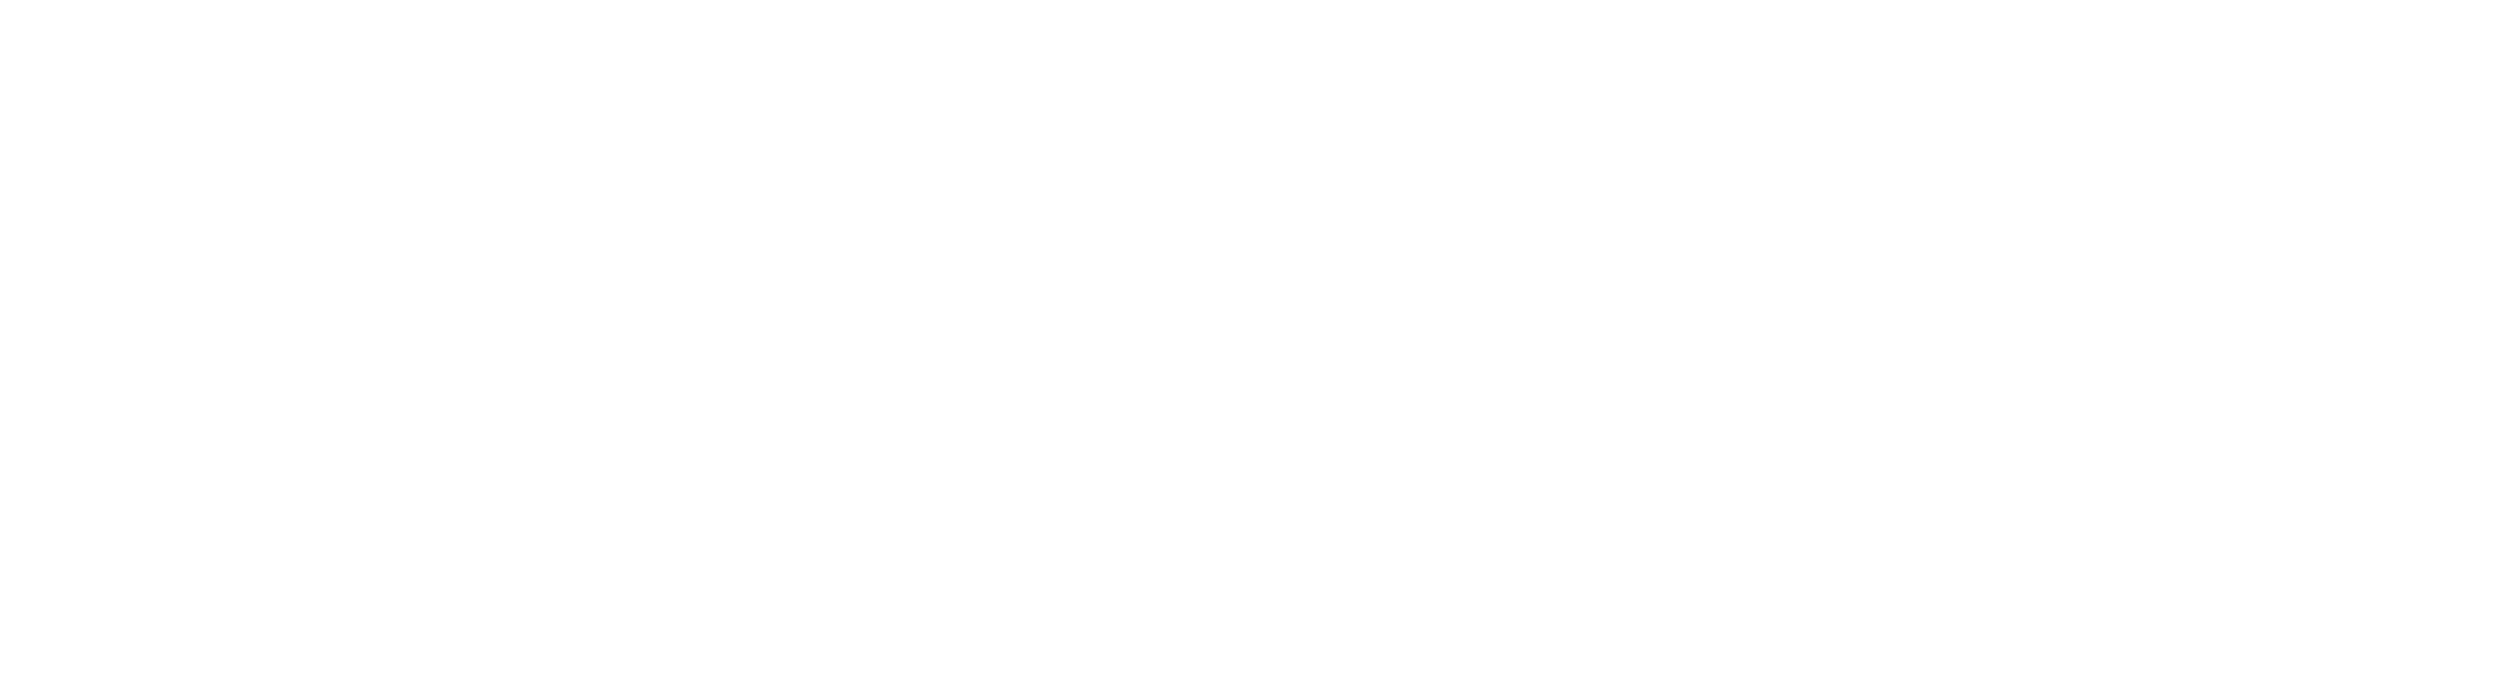 Kids Heart Medical - logo.white